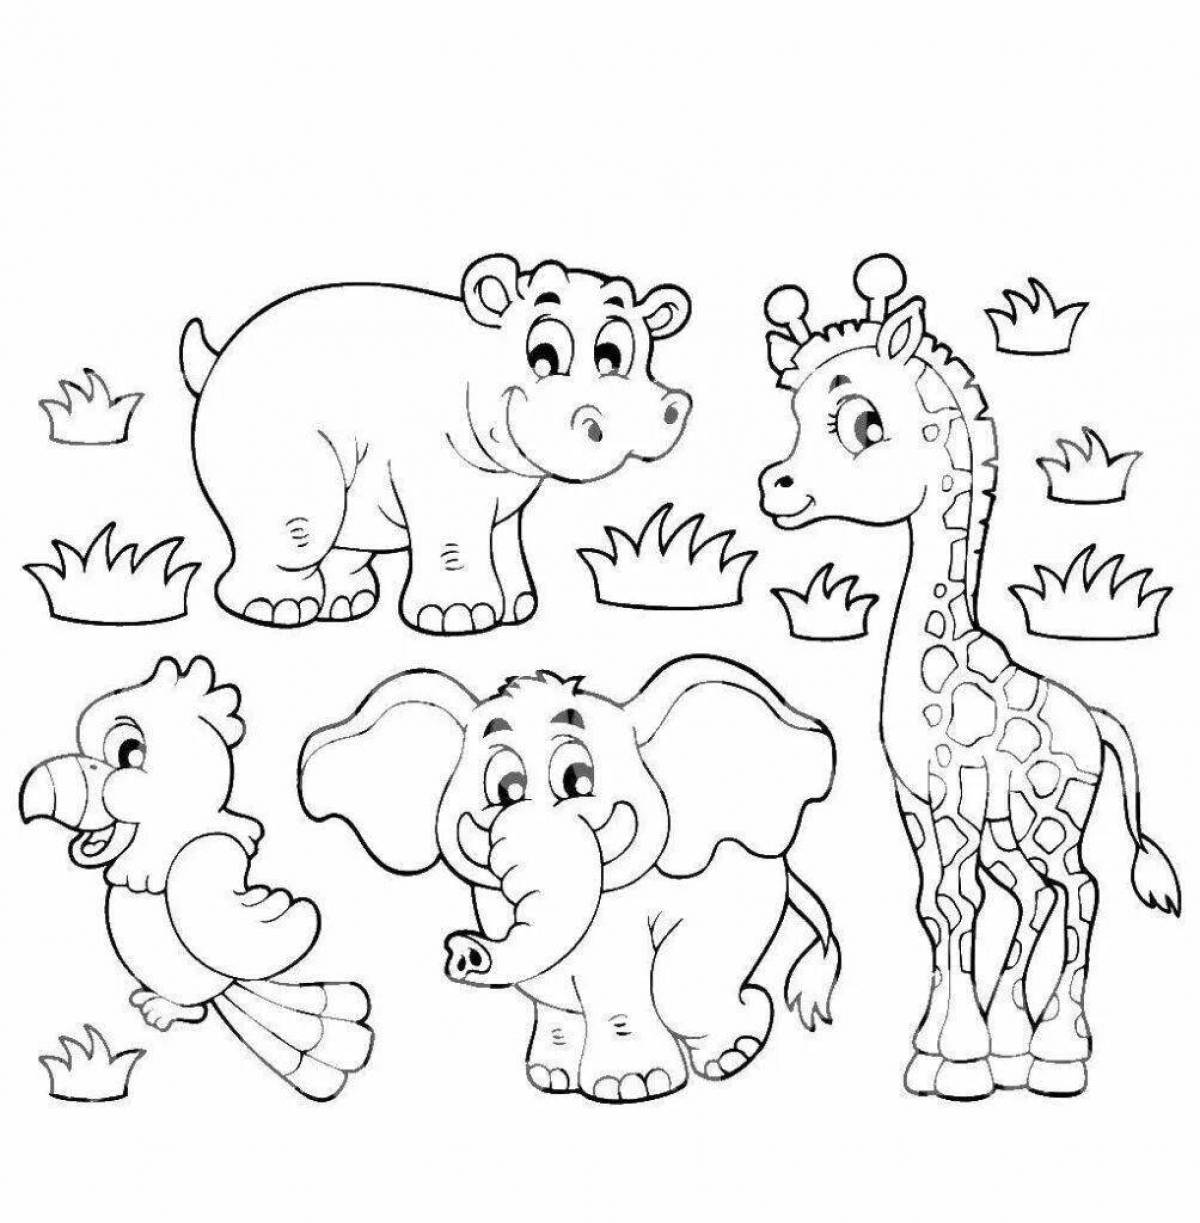 Развлекательная раскраска африканских животных для детей 6-7 лет